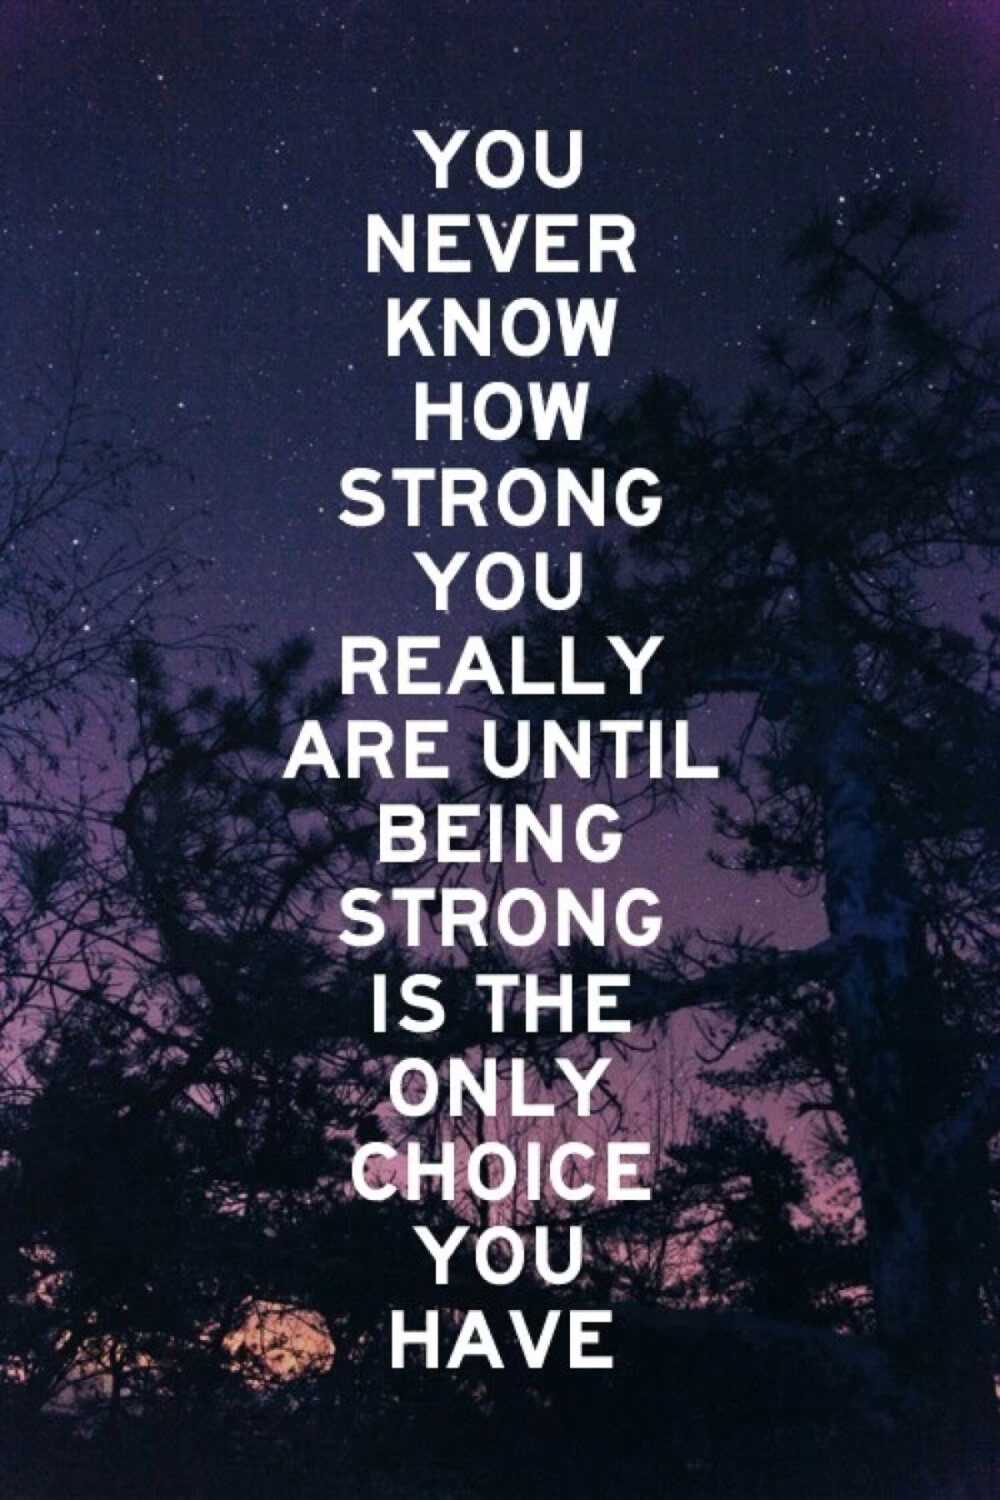 激励文字 英文 you never know how strong you really are until